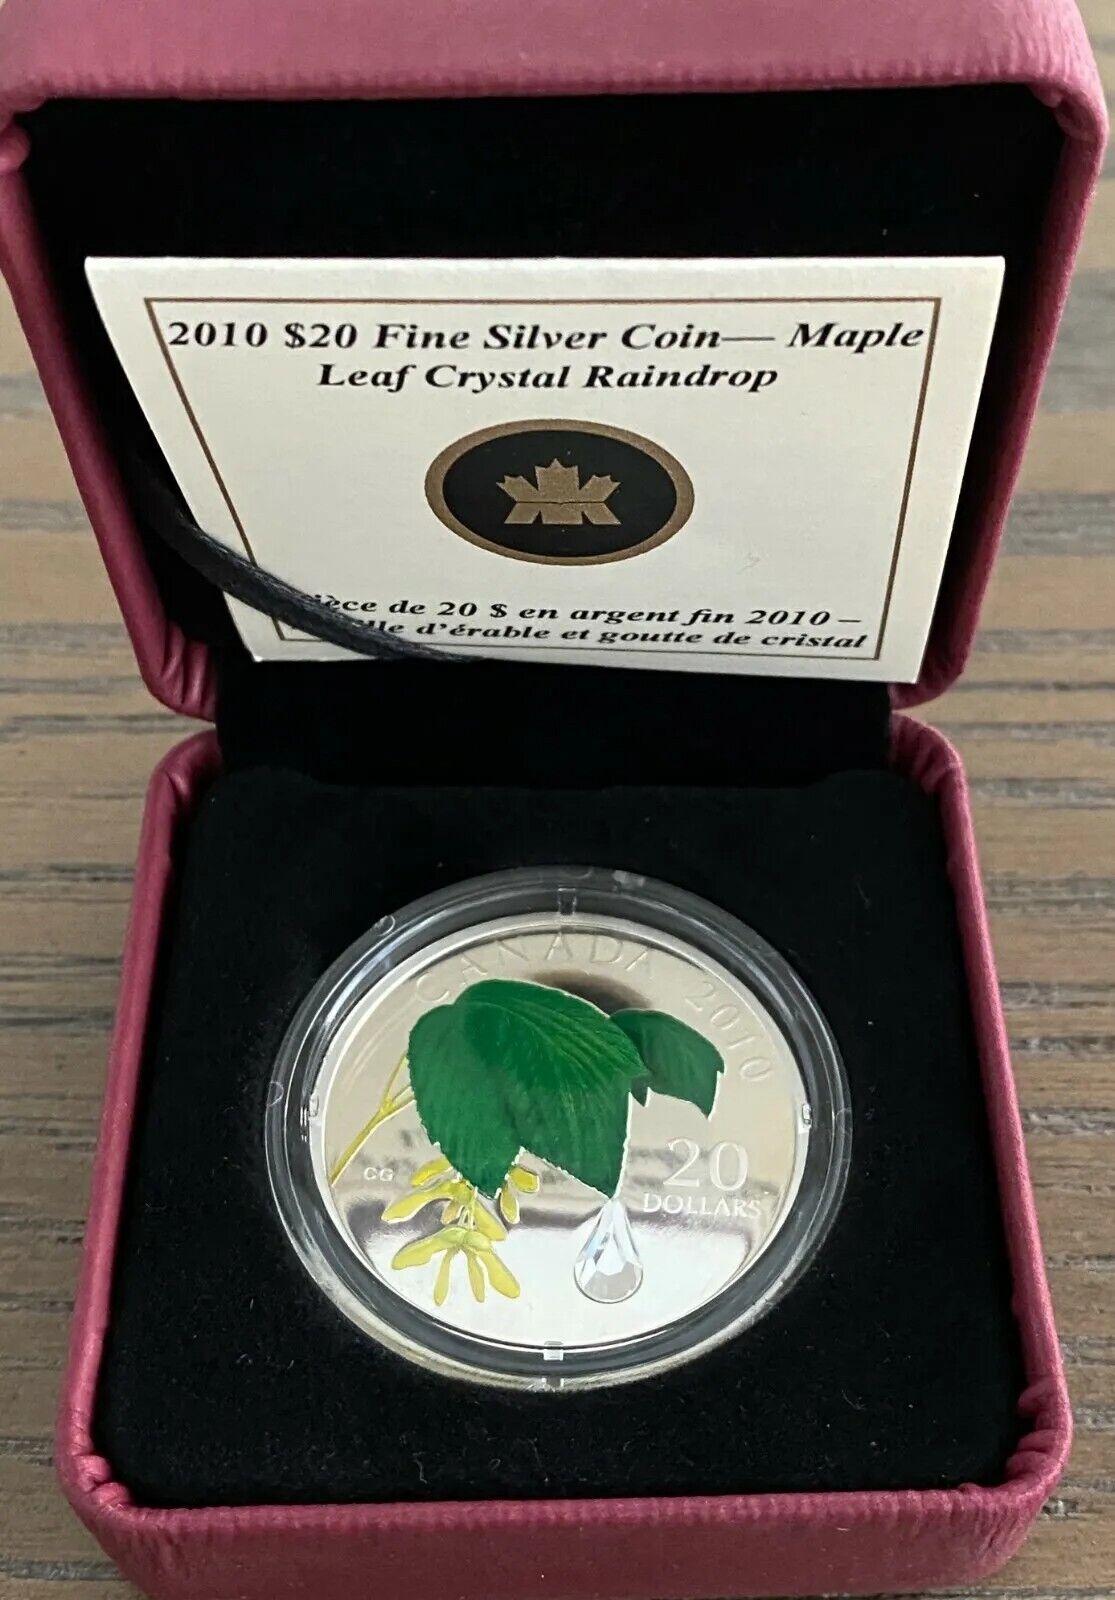 1 Oz Silver Coin 2010 $20 Canada Maple Leaf with Crystal Raindrop Swarovski-classypw.com-3